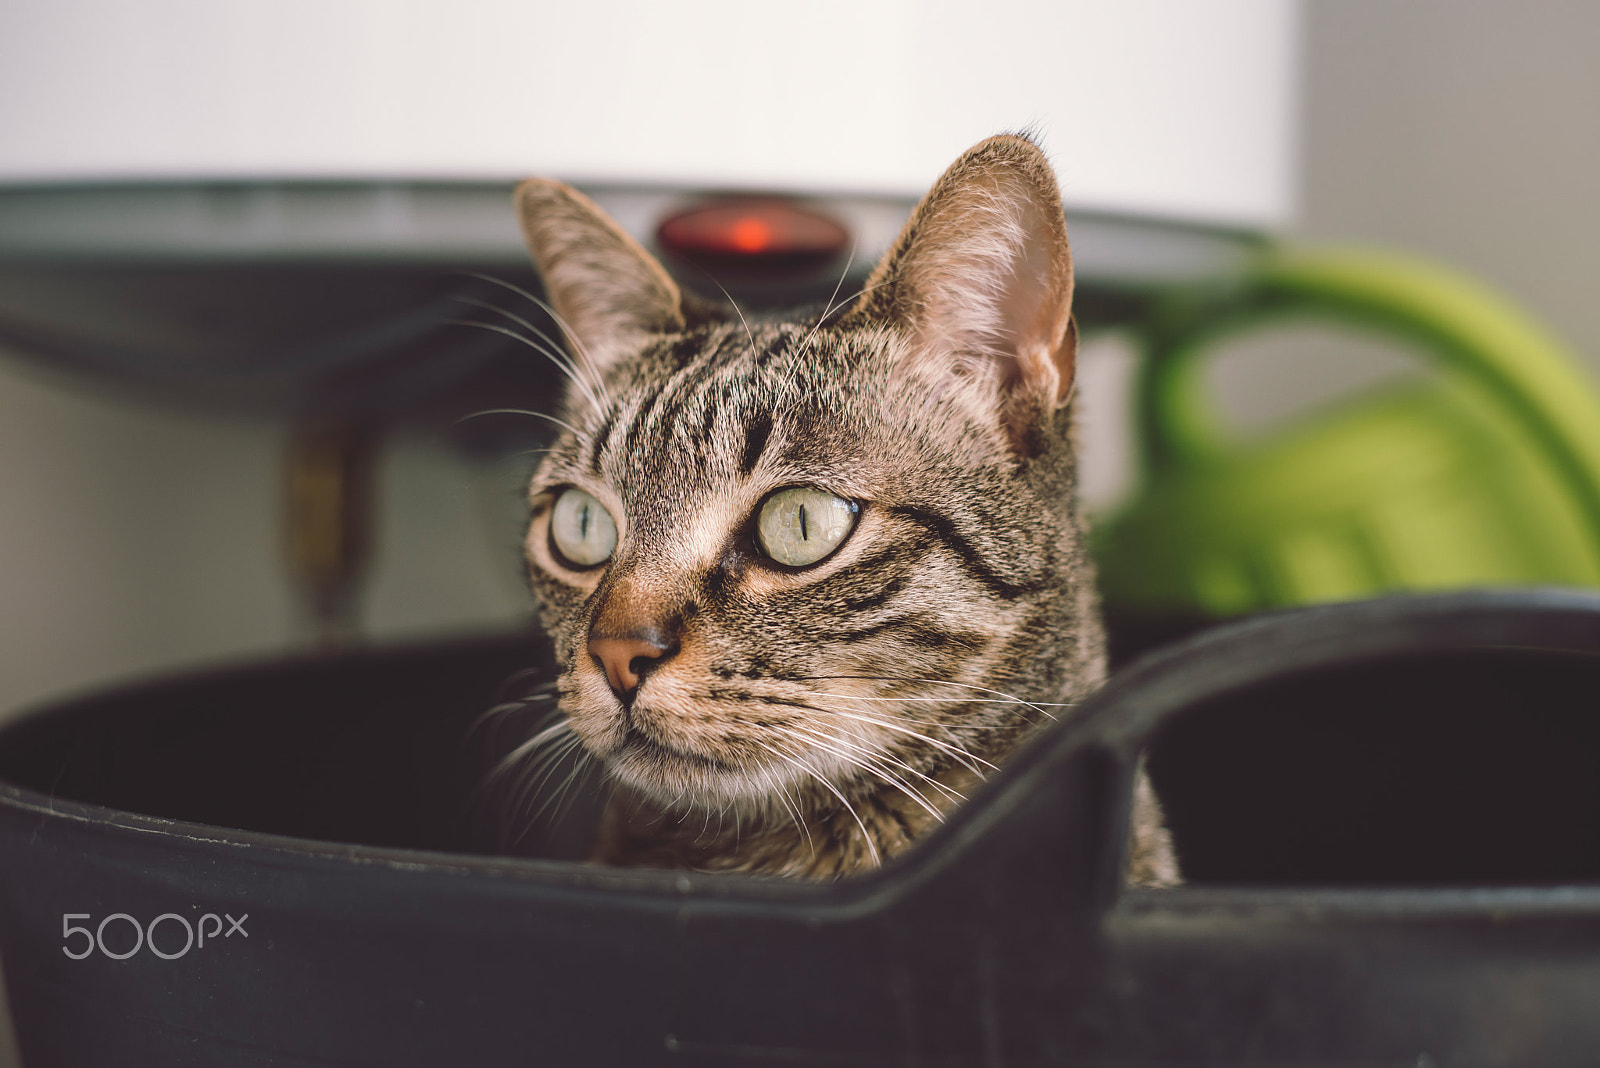 Nikon D610 sample photo. Portrait of a cat photography